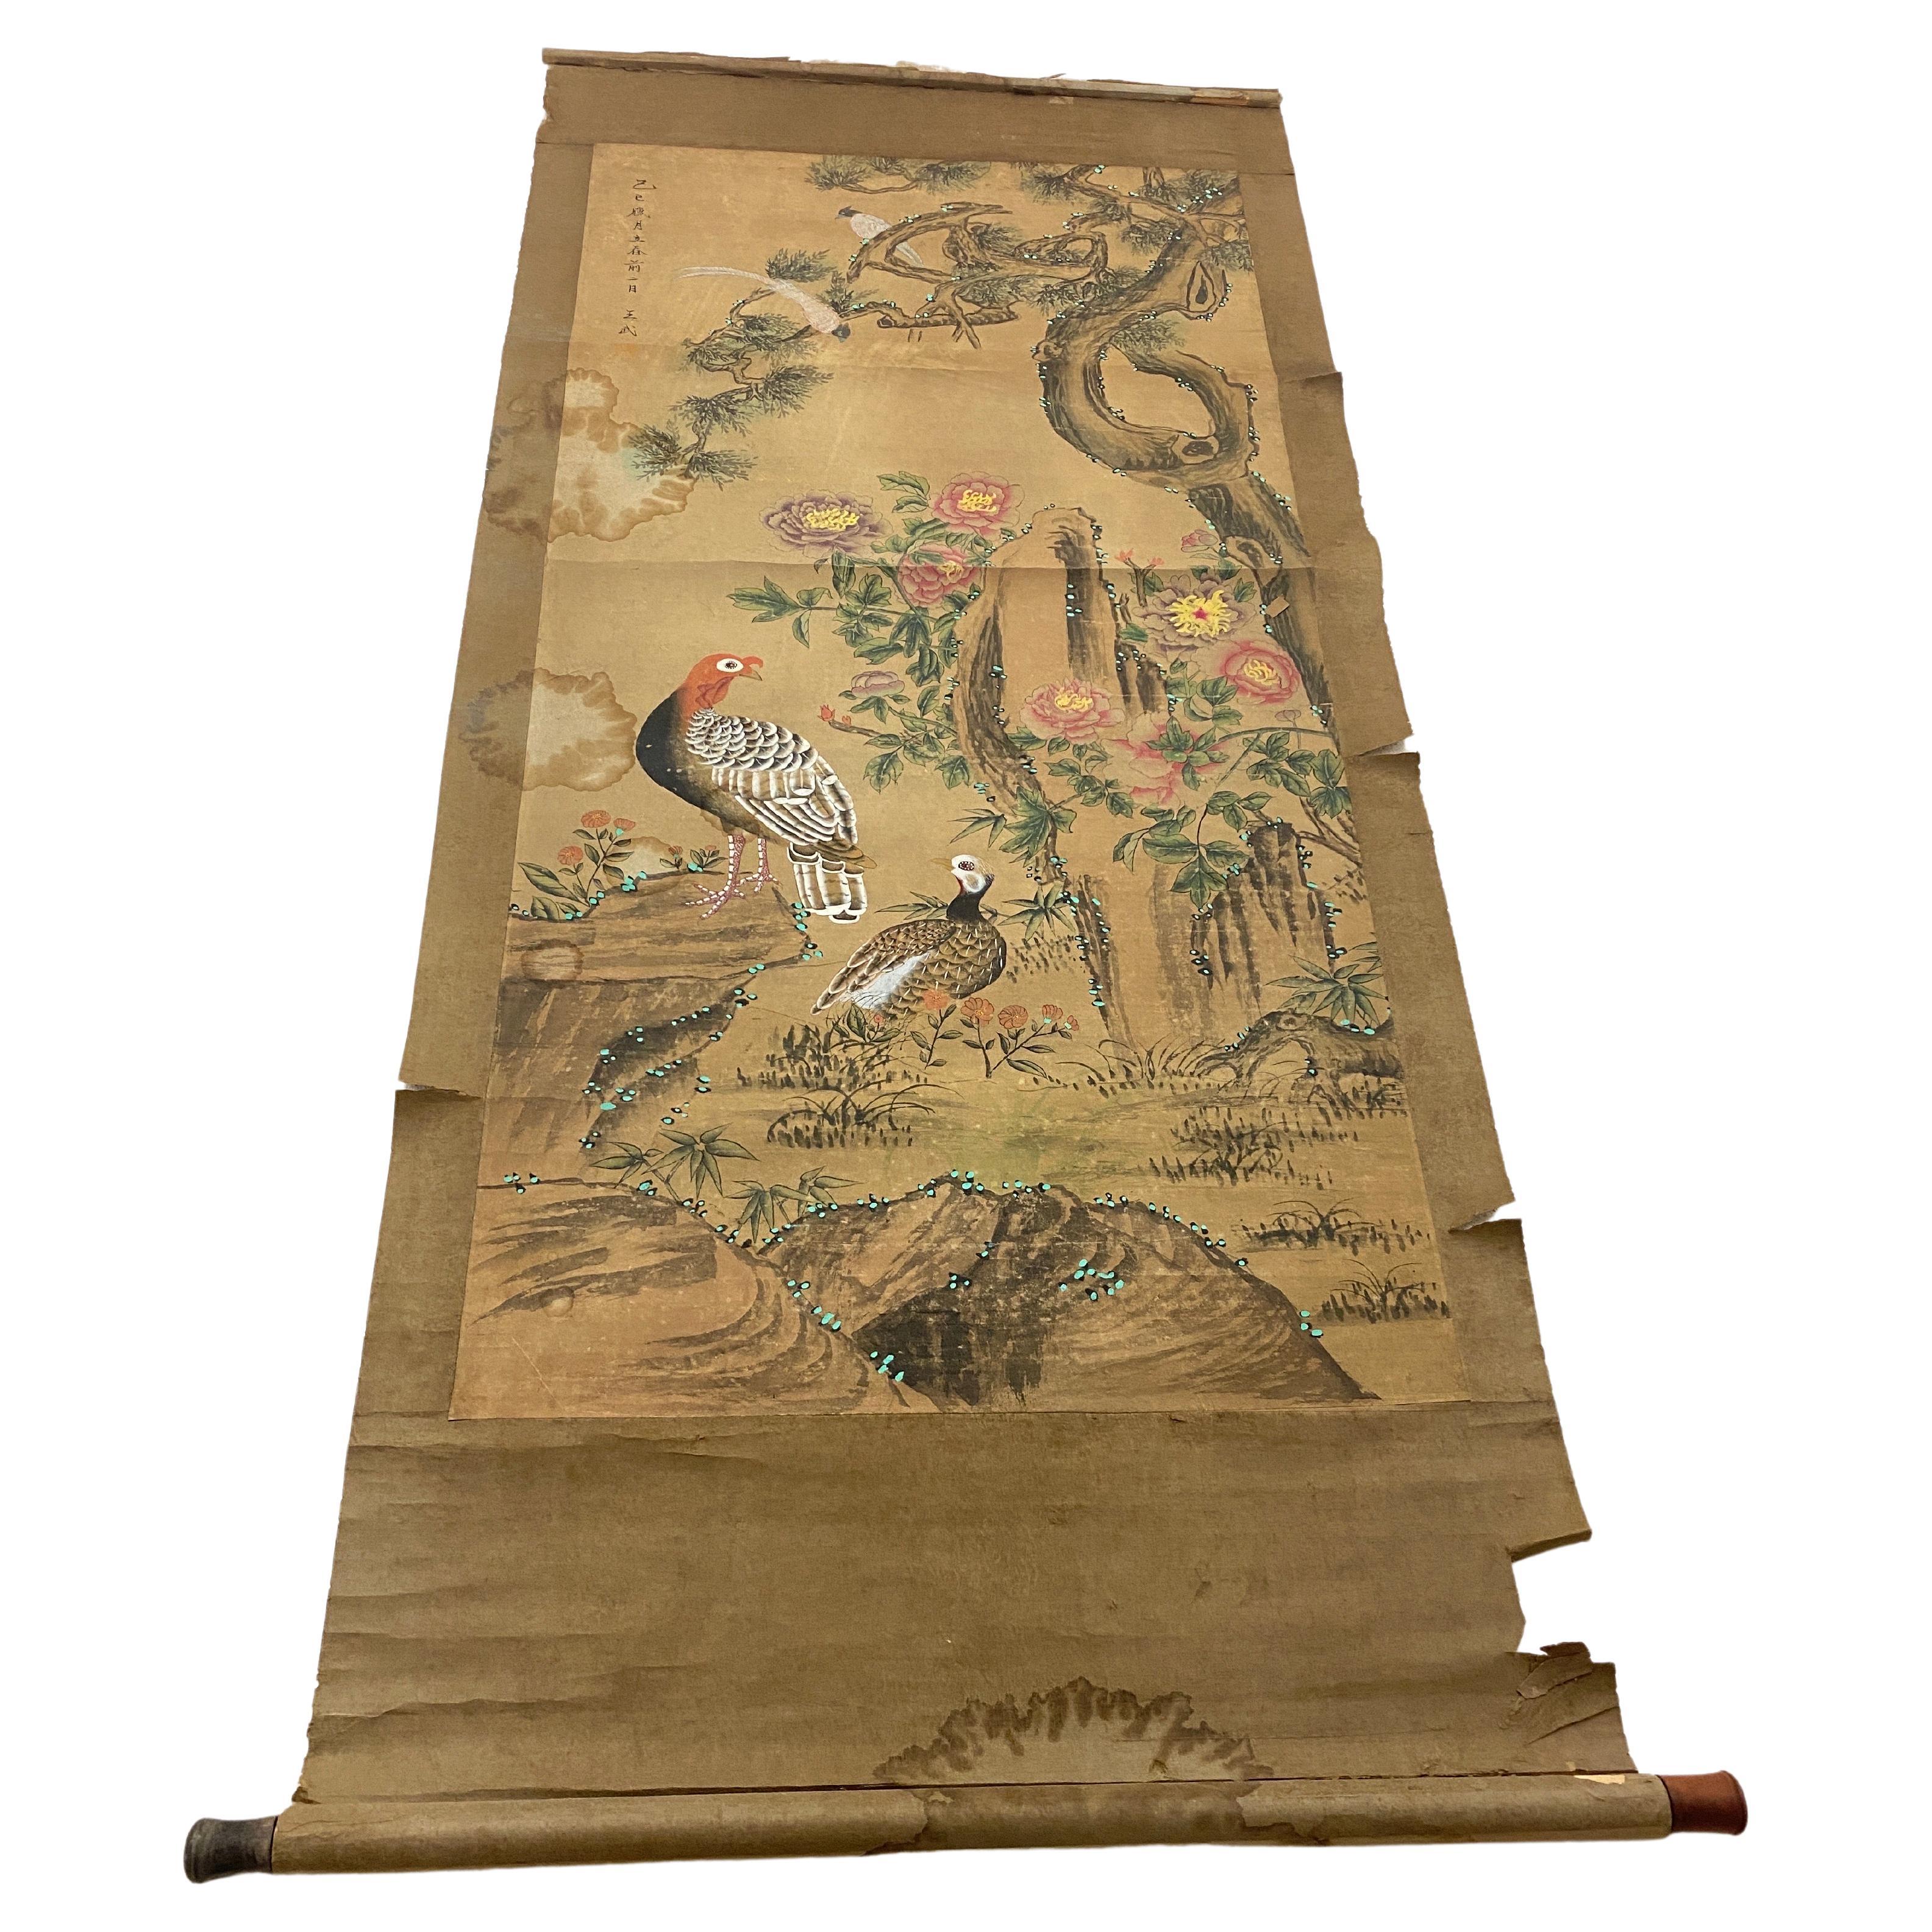 Peinture chinoise sur papier rouleau, Chine, 19e siècle, décor d'oiseaux et de nature